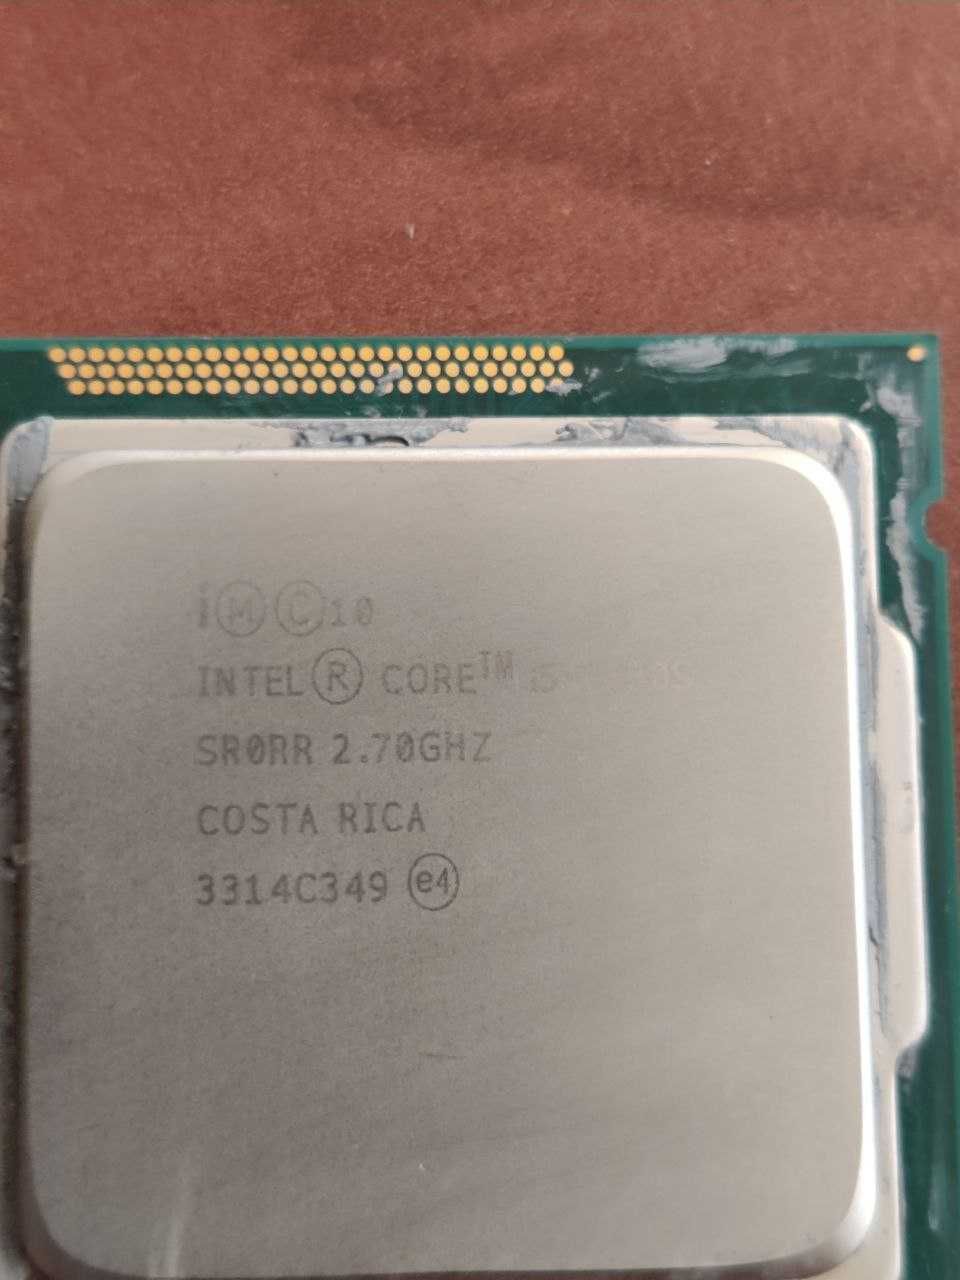 Процесор Intel Core ii5-3330S и крепеж к нему